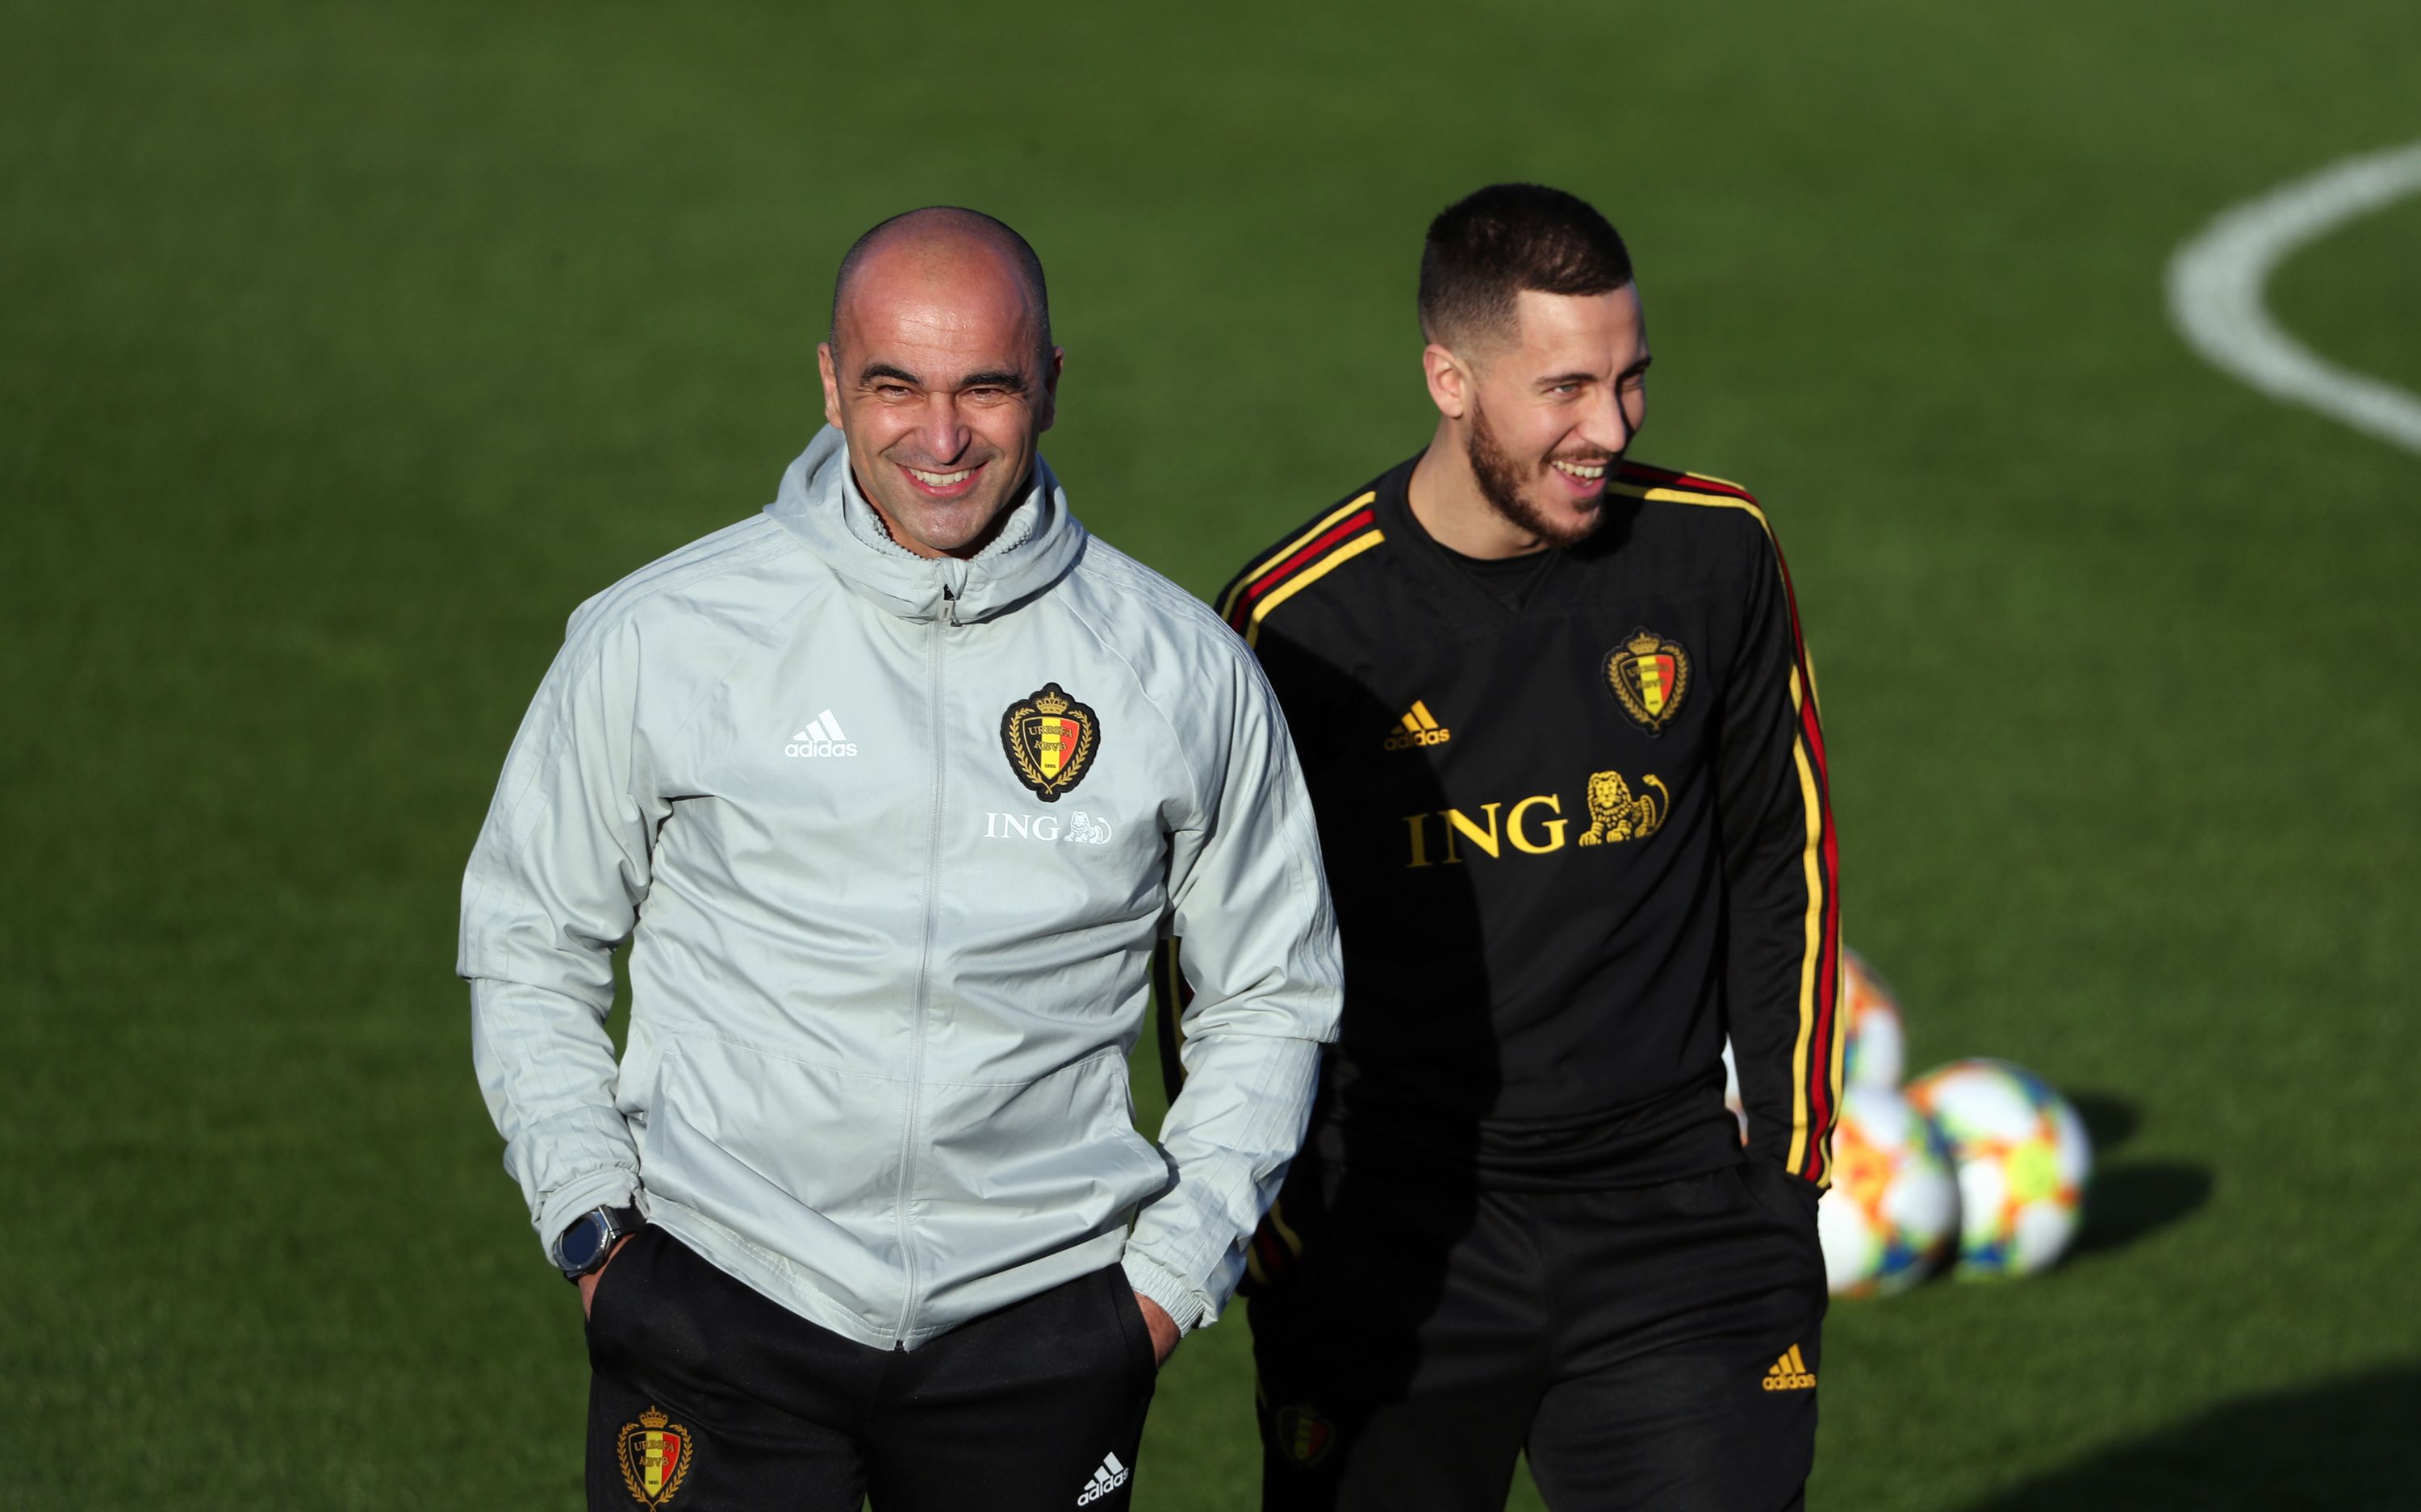 Eden Hazard joins Romelu Lukaku and Kevin De Bruyne in Belgium’s Euro 2020 squad